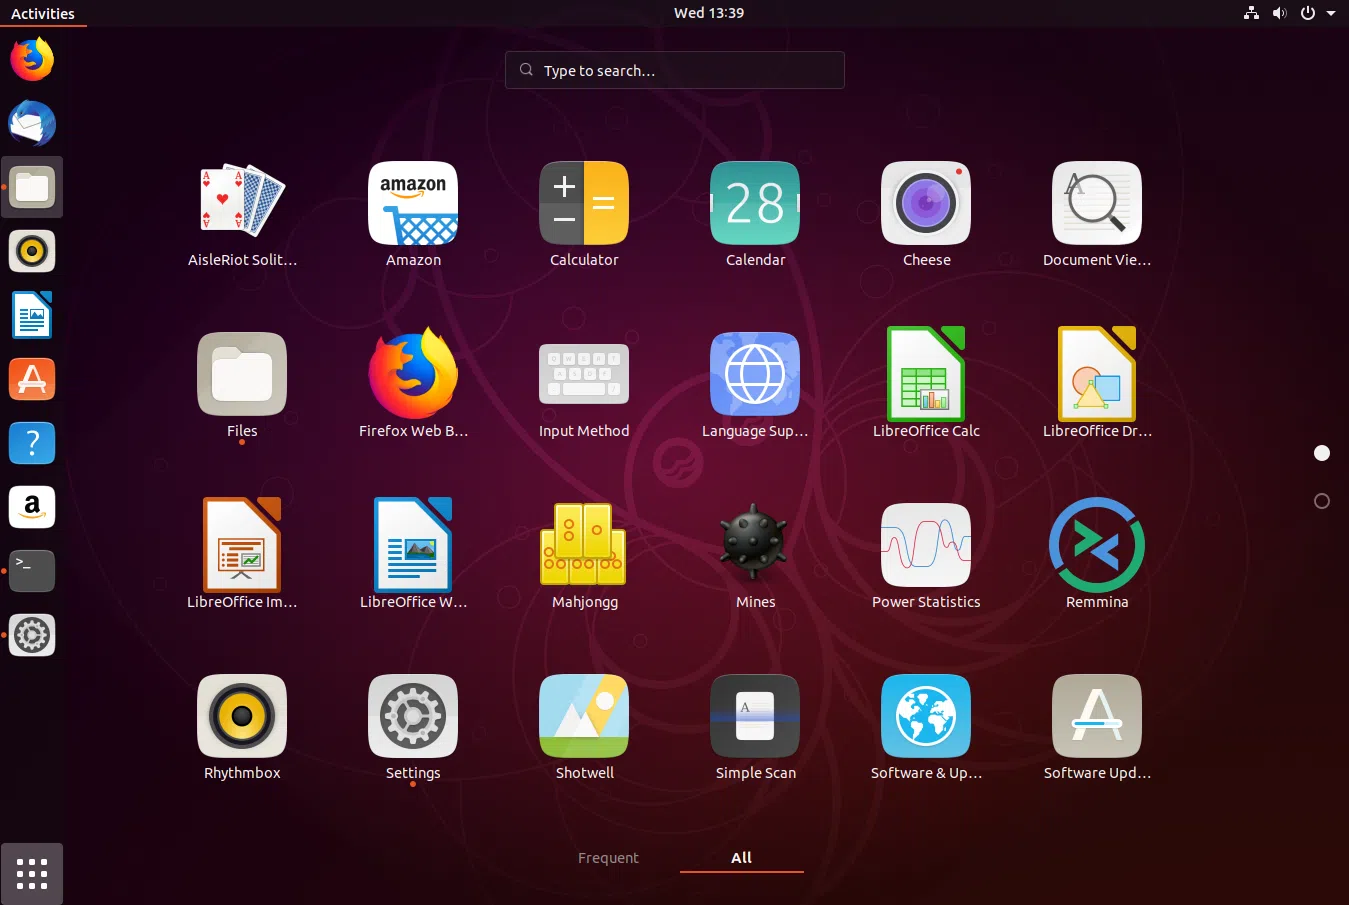 Captura de tela do tema Ubuntu 18.10 Yaru Gnome Shell